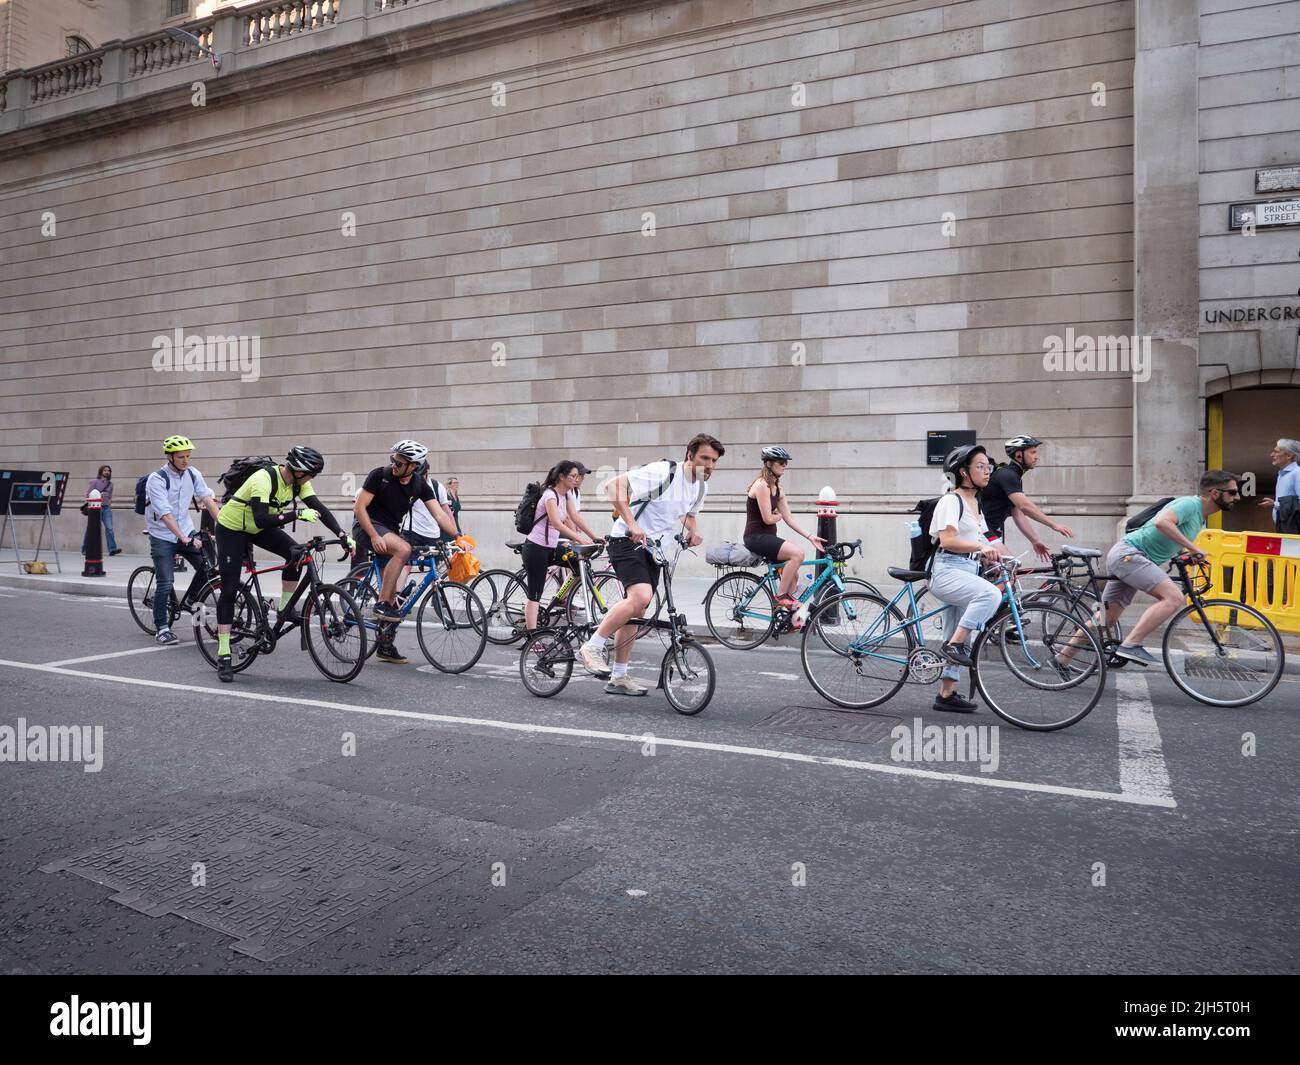 Cola de ciclistas fuera del perímetro amurallado del Banco de Inglaterra, Lothbury, Londres Foto de stock